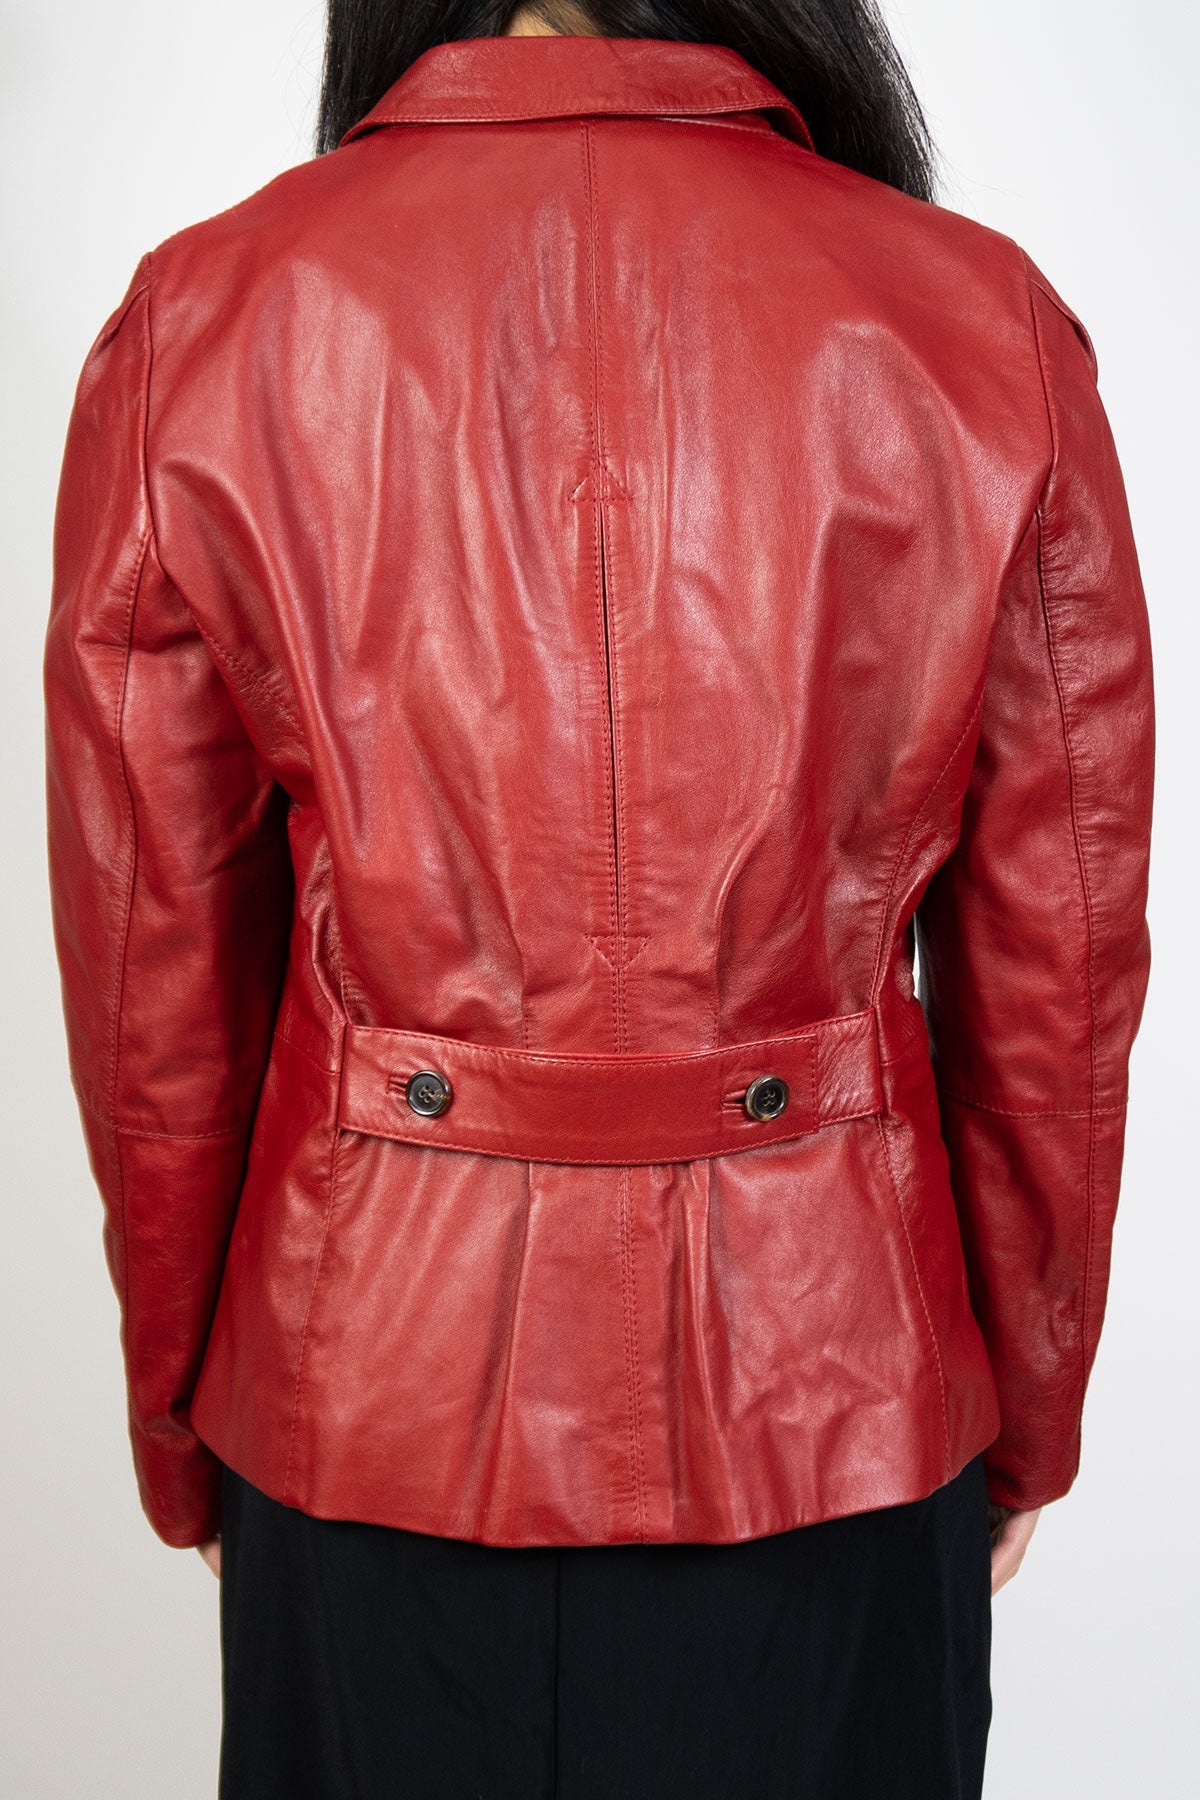 Hugo Boss Red Leather Jacket / Medium - Jade Vintage